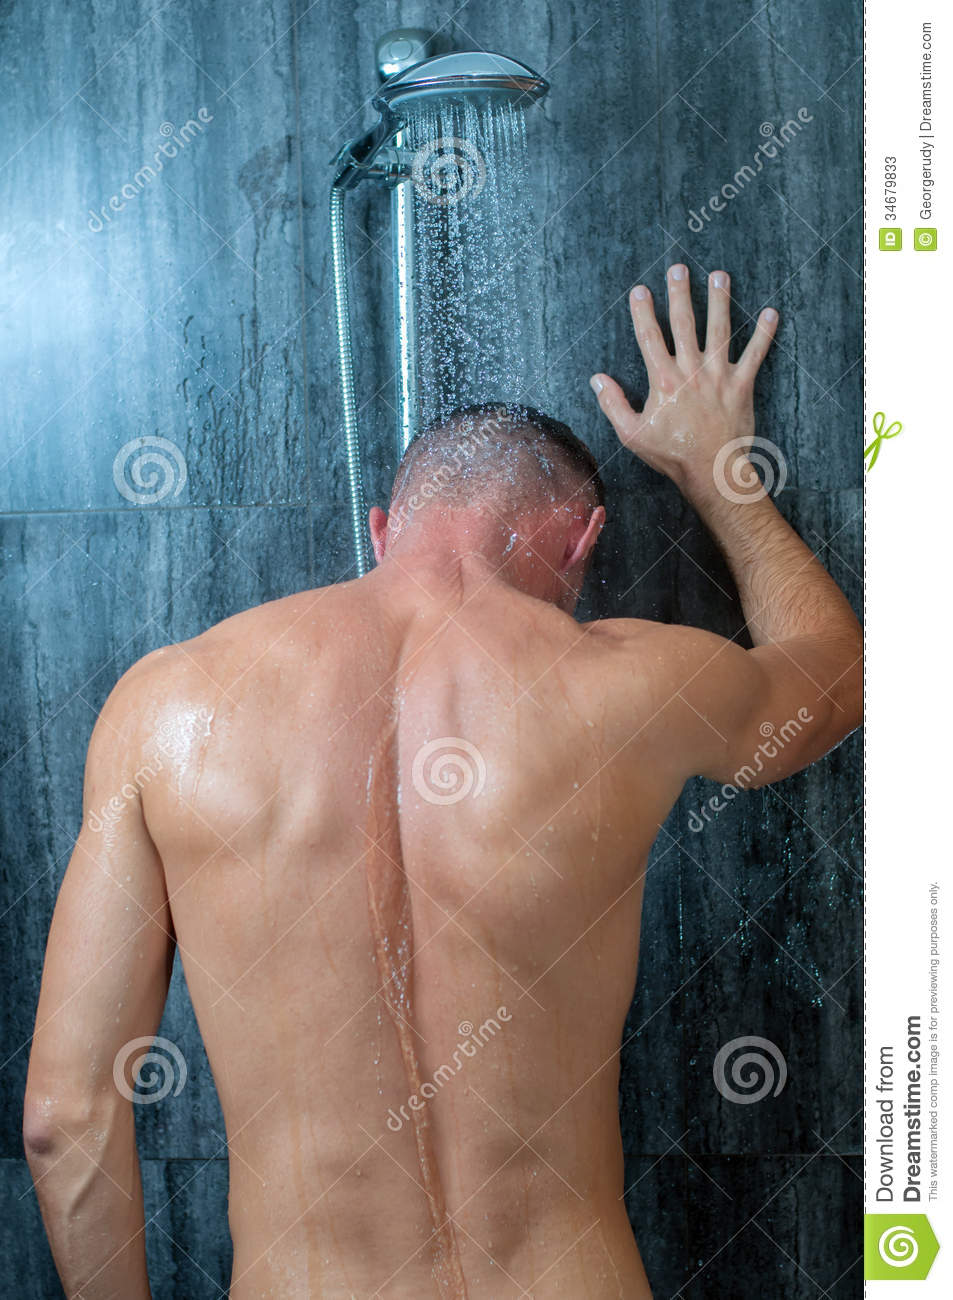 Camber reccomend Male masturbation techniques in the shower